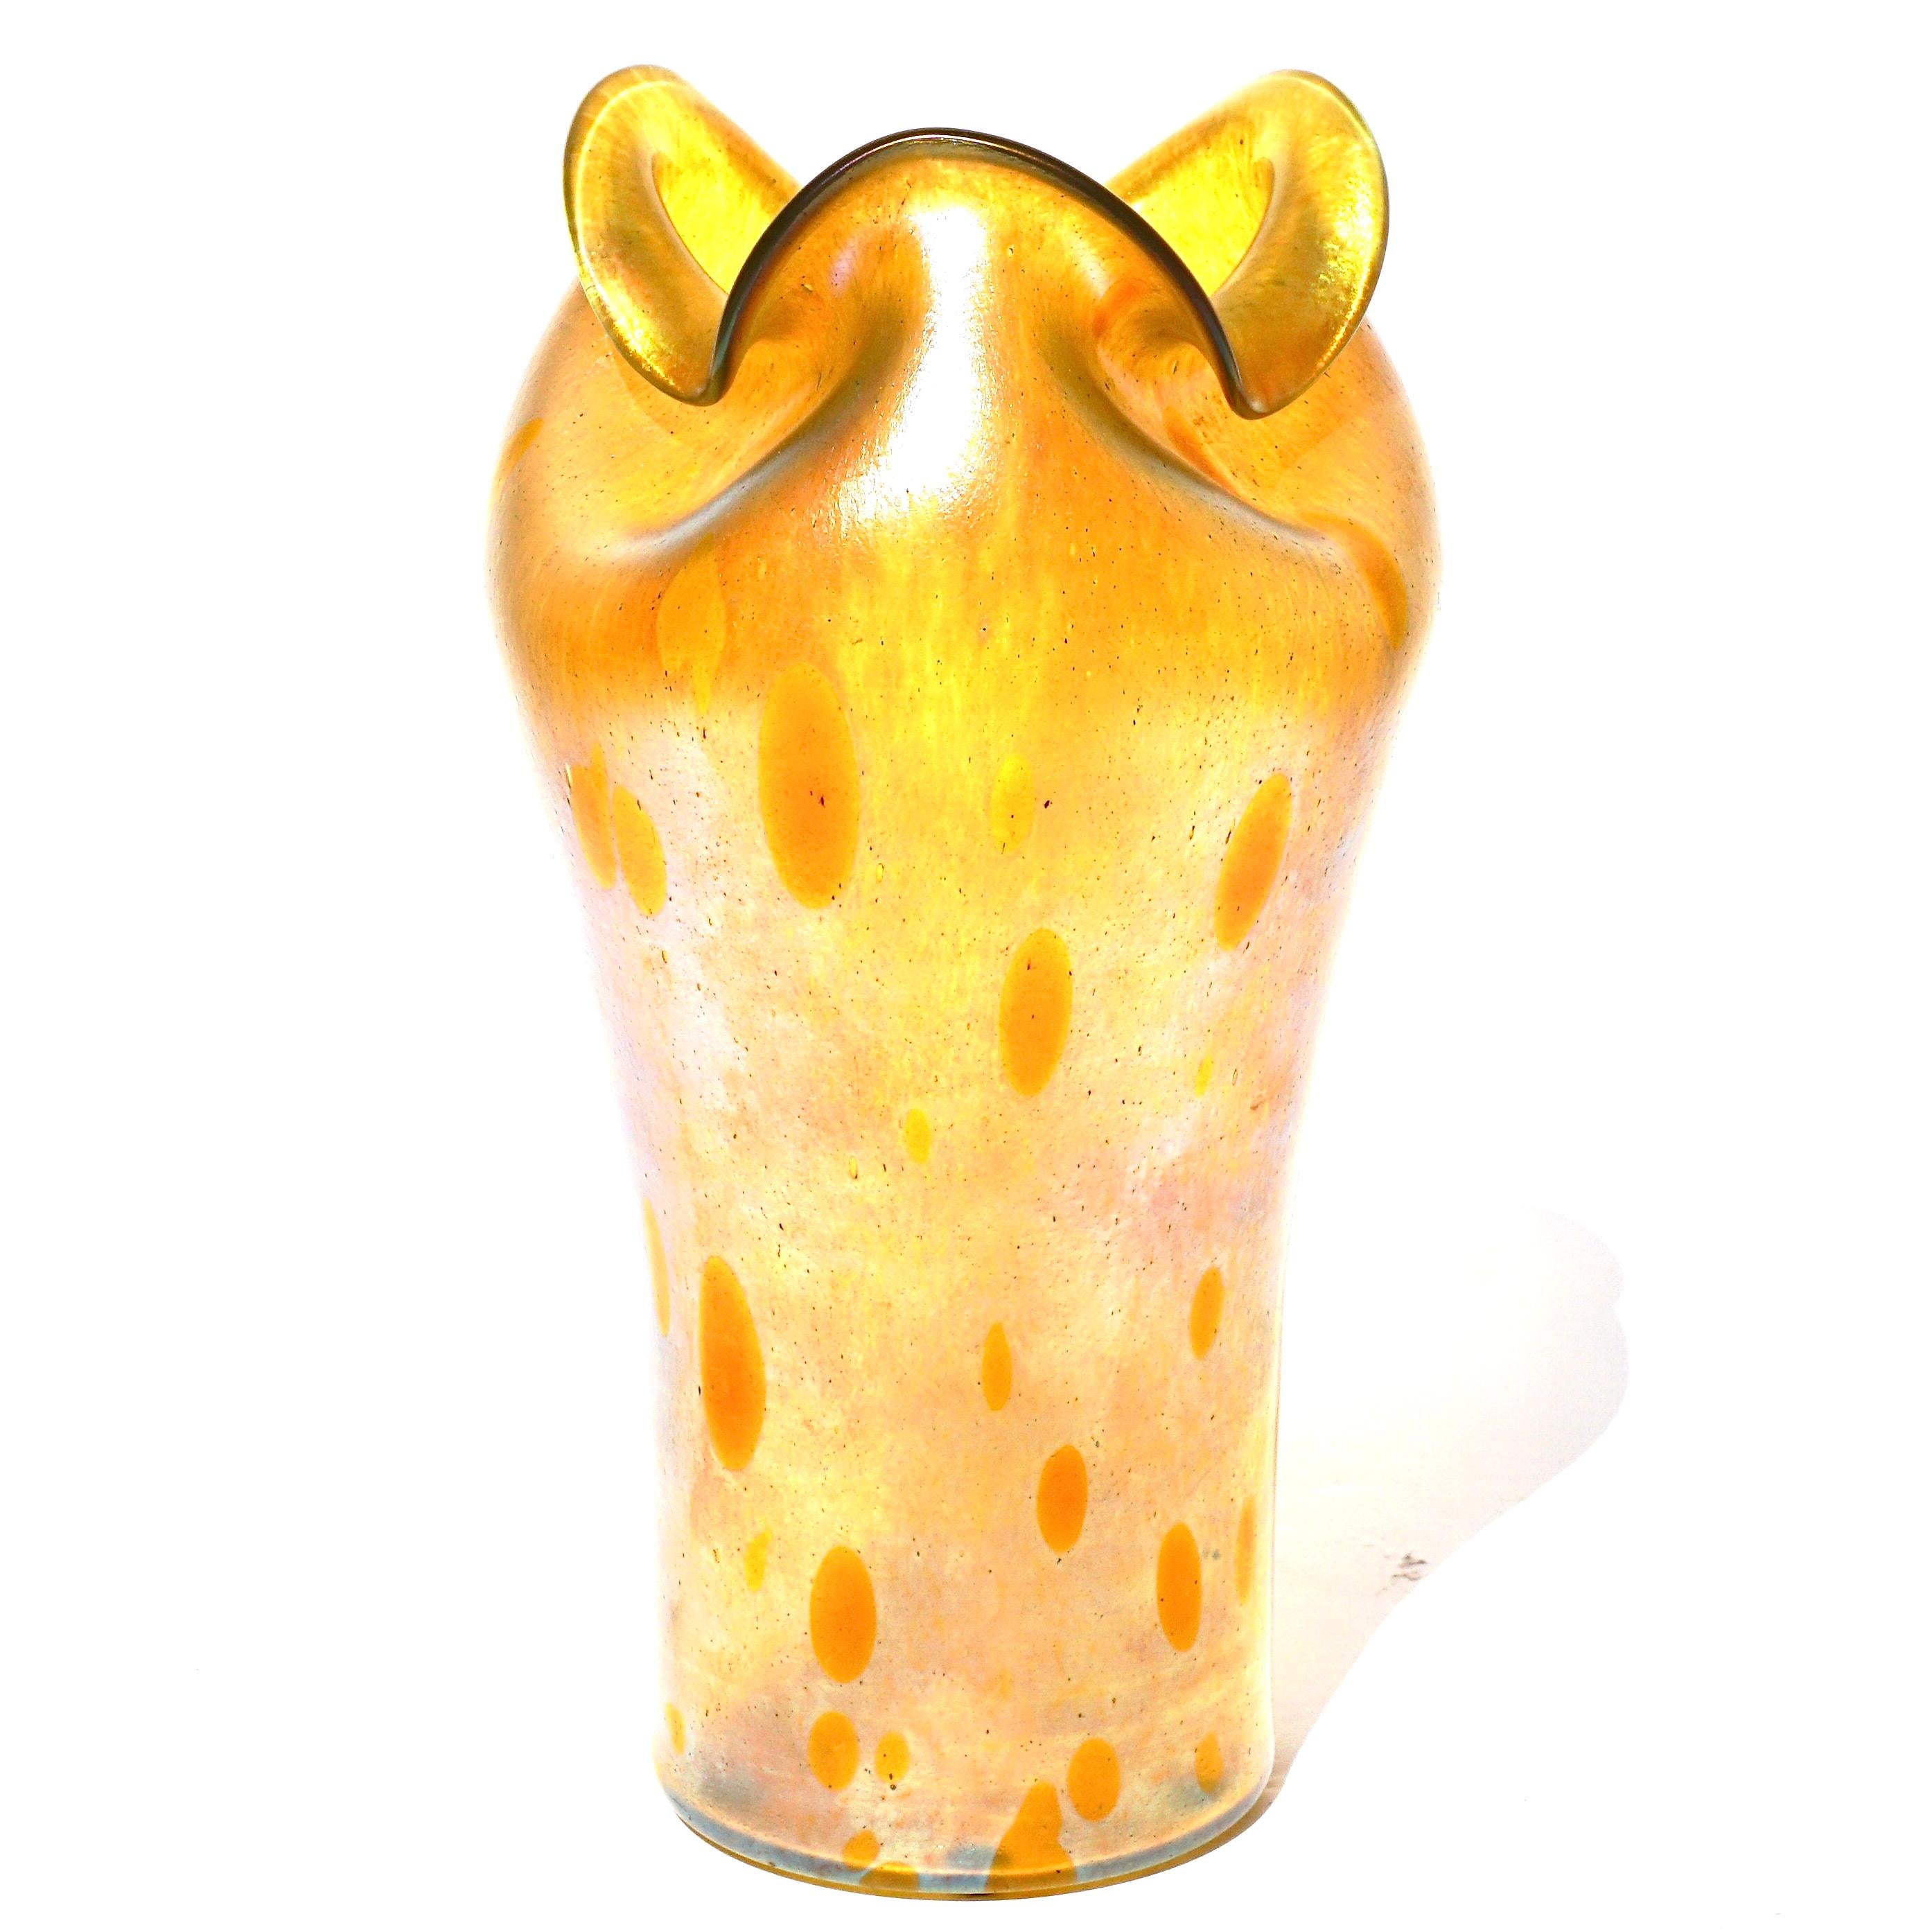 Ein großer Loetz Astraea Glaskasten um 1905

Eine schöne gelbe Vase 